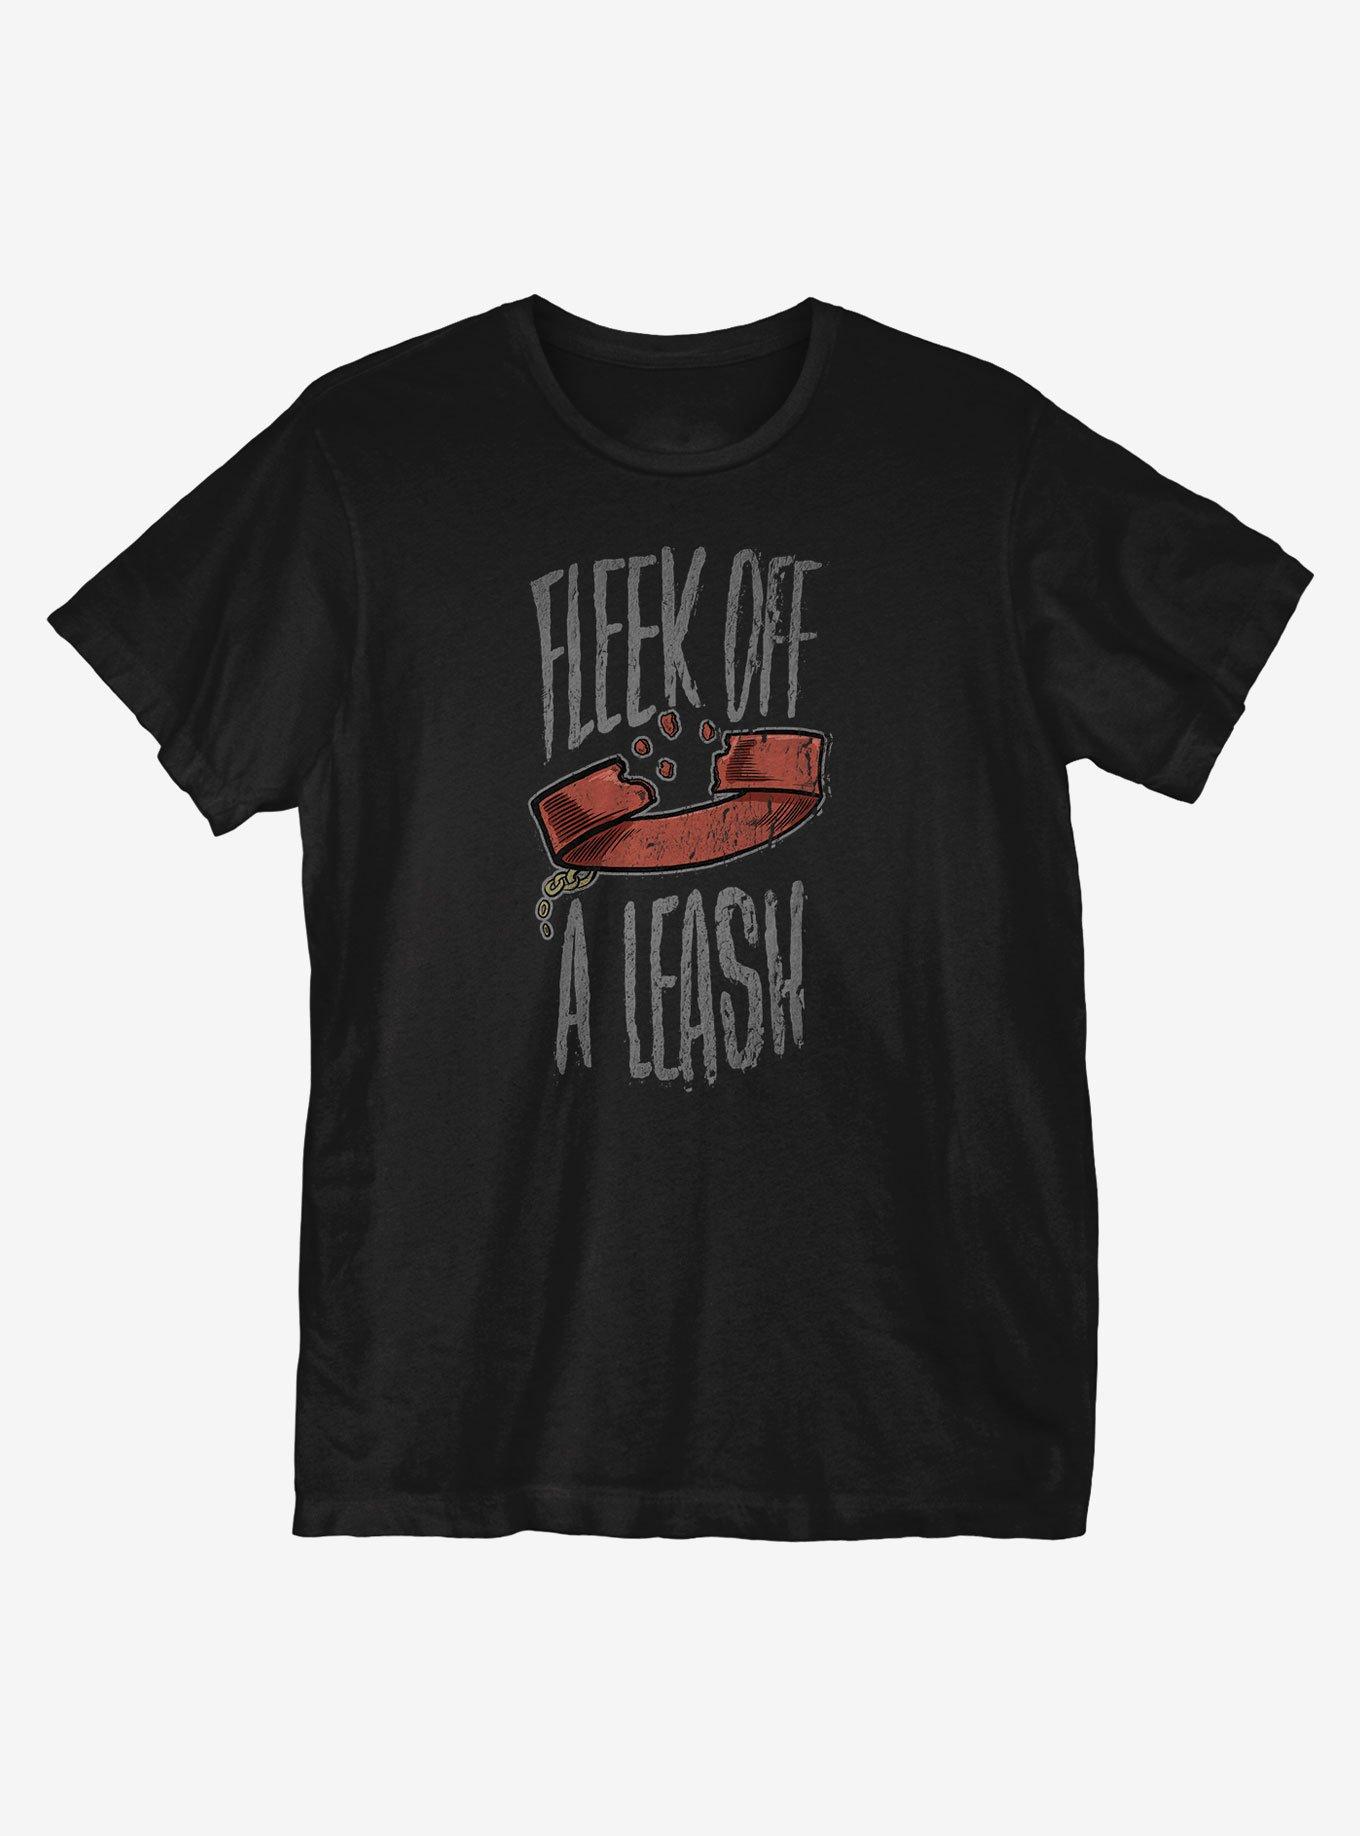 Fleek Off A Leash T-Shirt, BLACK, hi-res